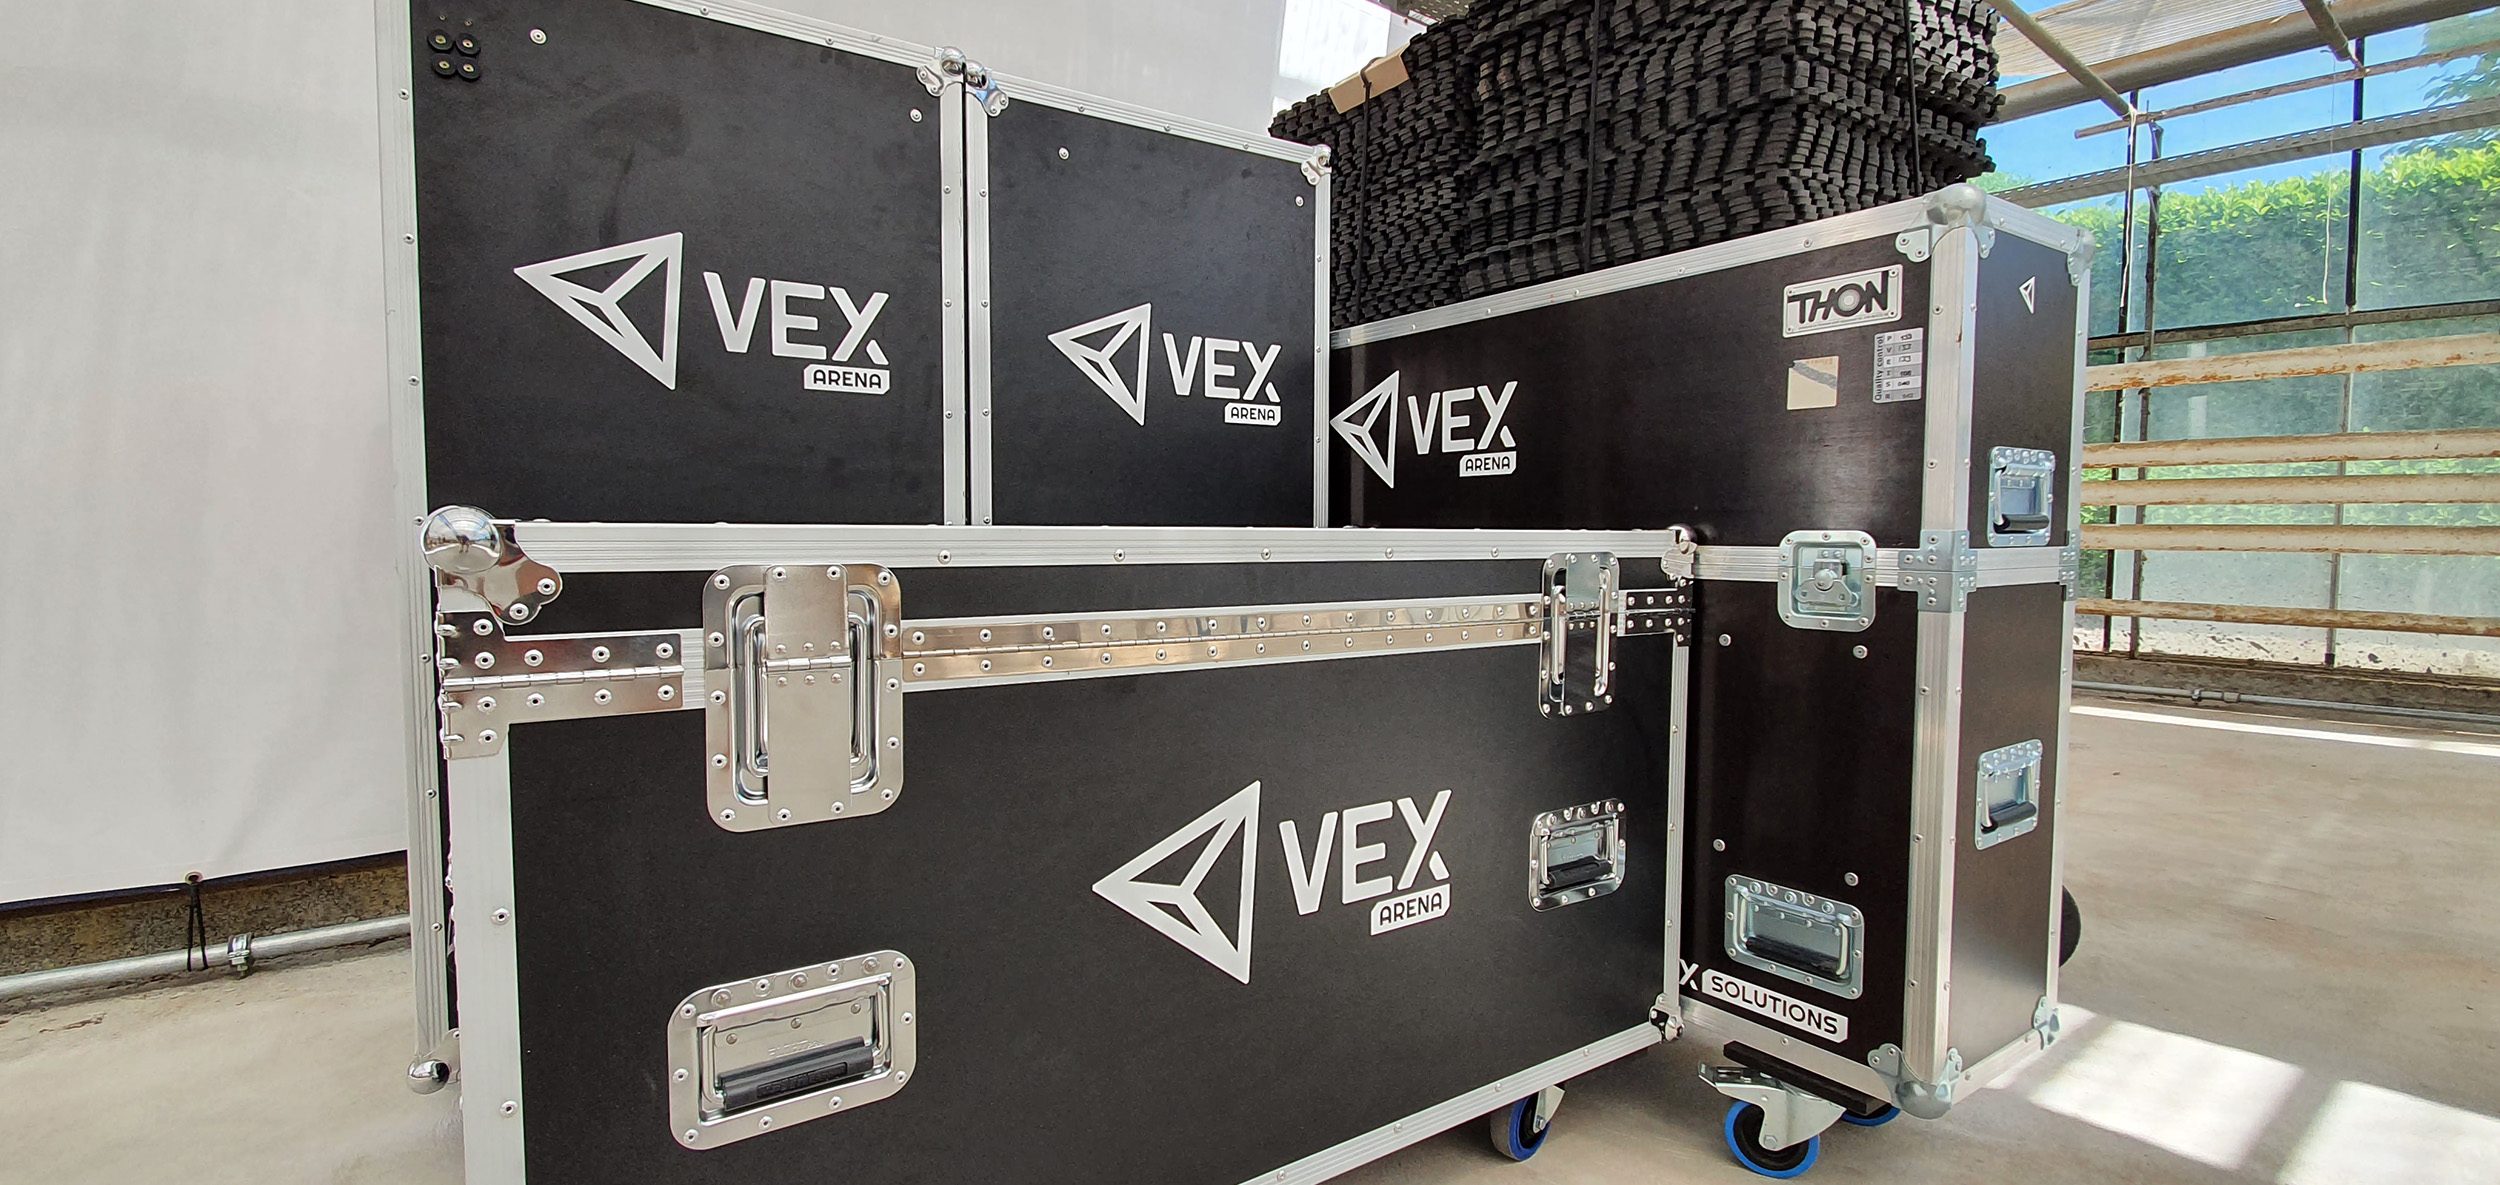 VEX Arena mobile, el único campo de realidad virtual por el que puedes moverte